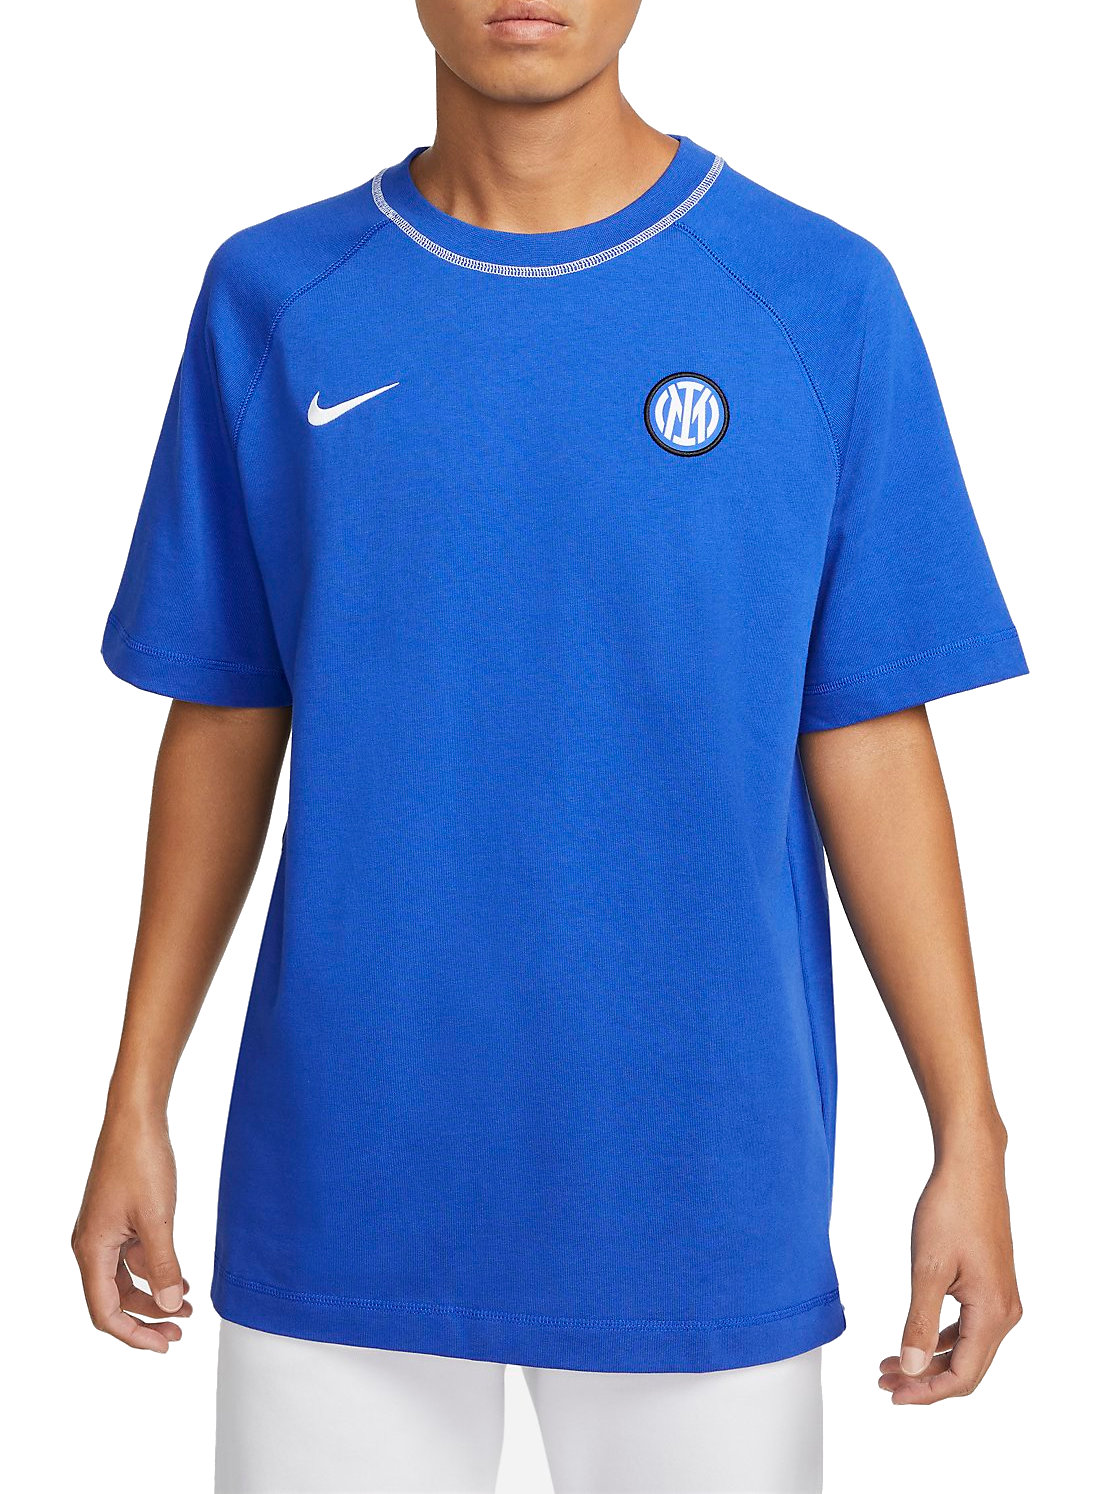 Camiseta Nike Inter Milan Travel Men's Short-Sleeve Football Top